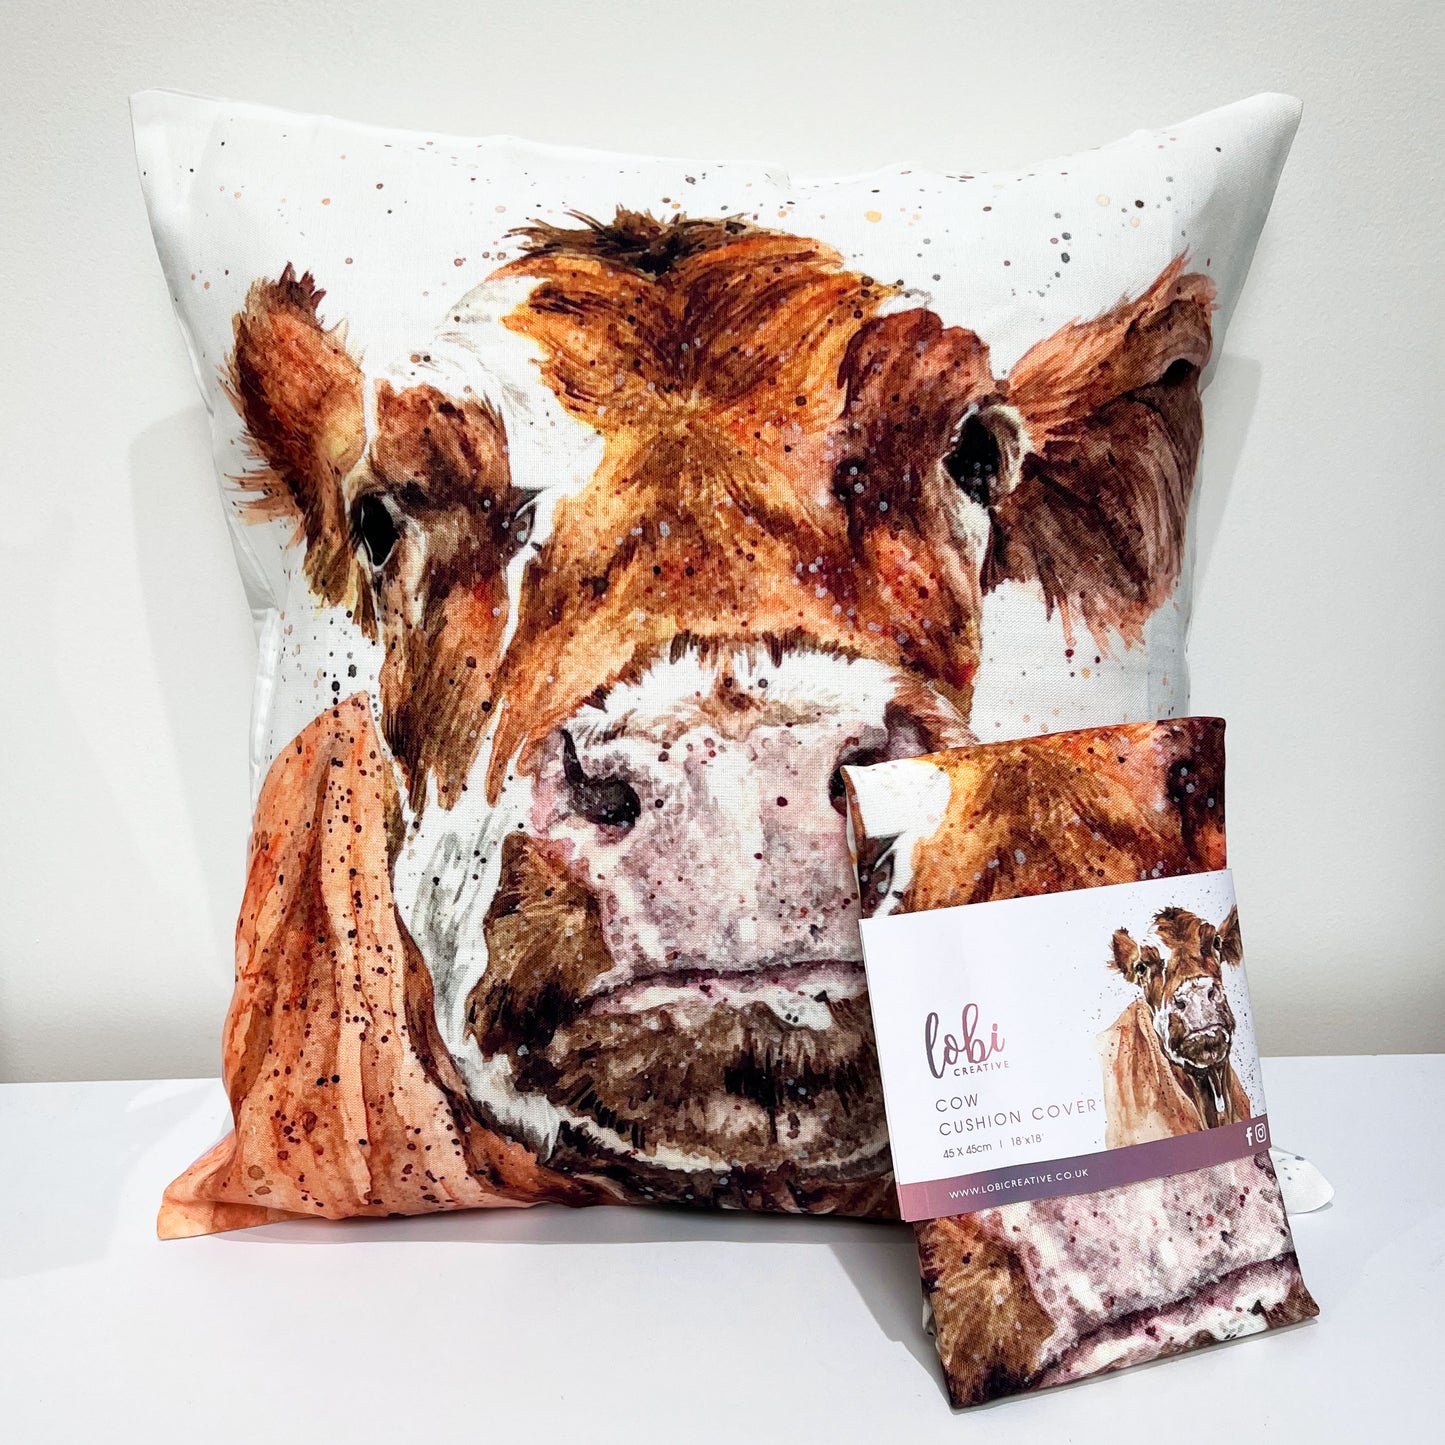 Cow cushion cover